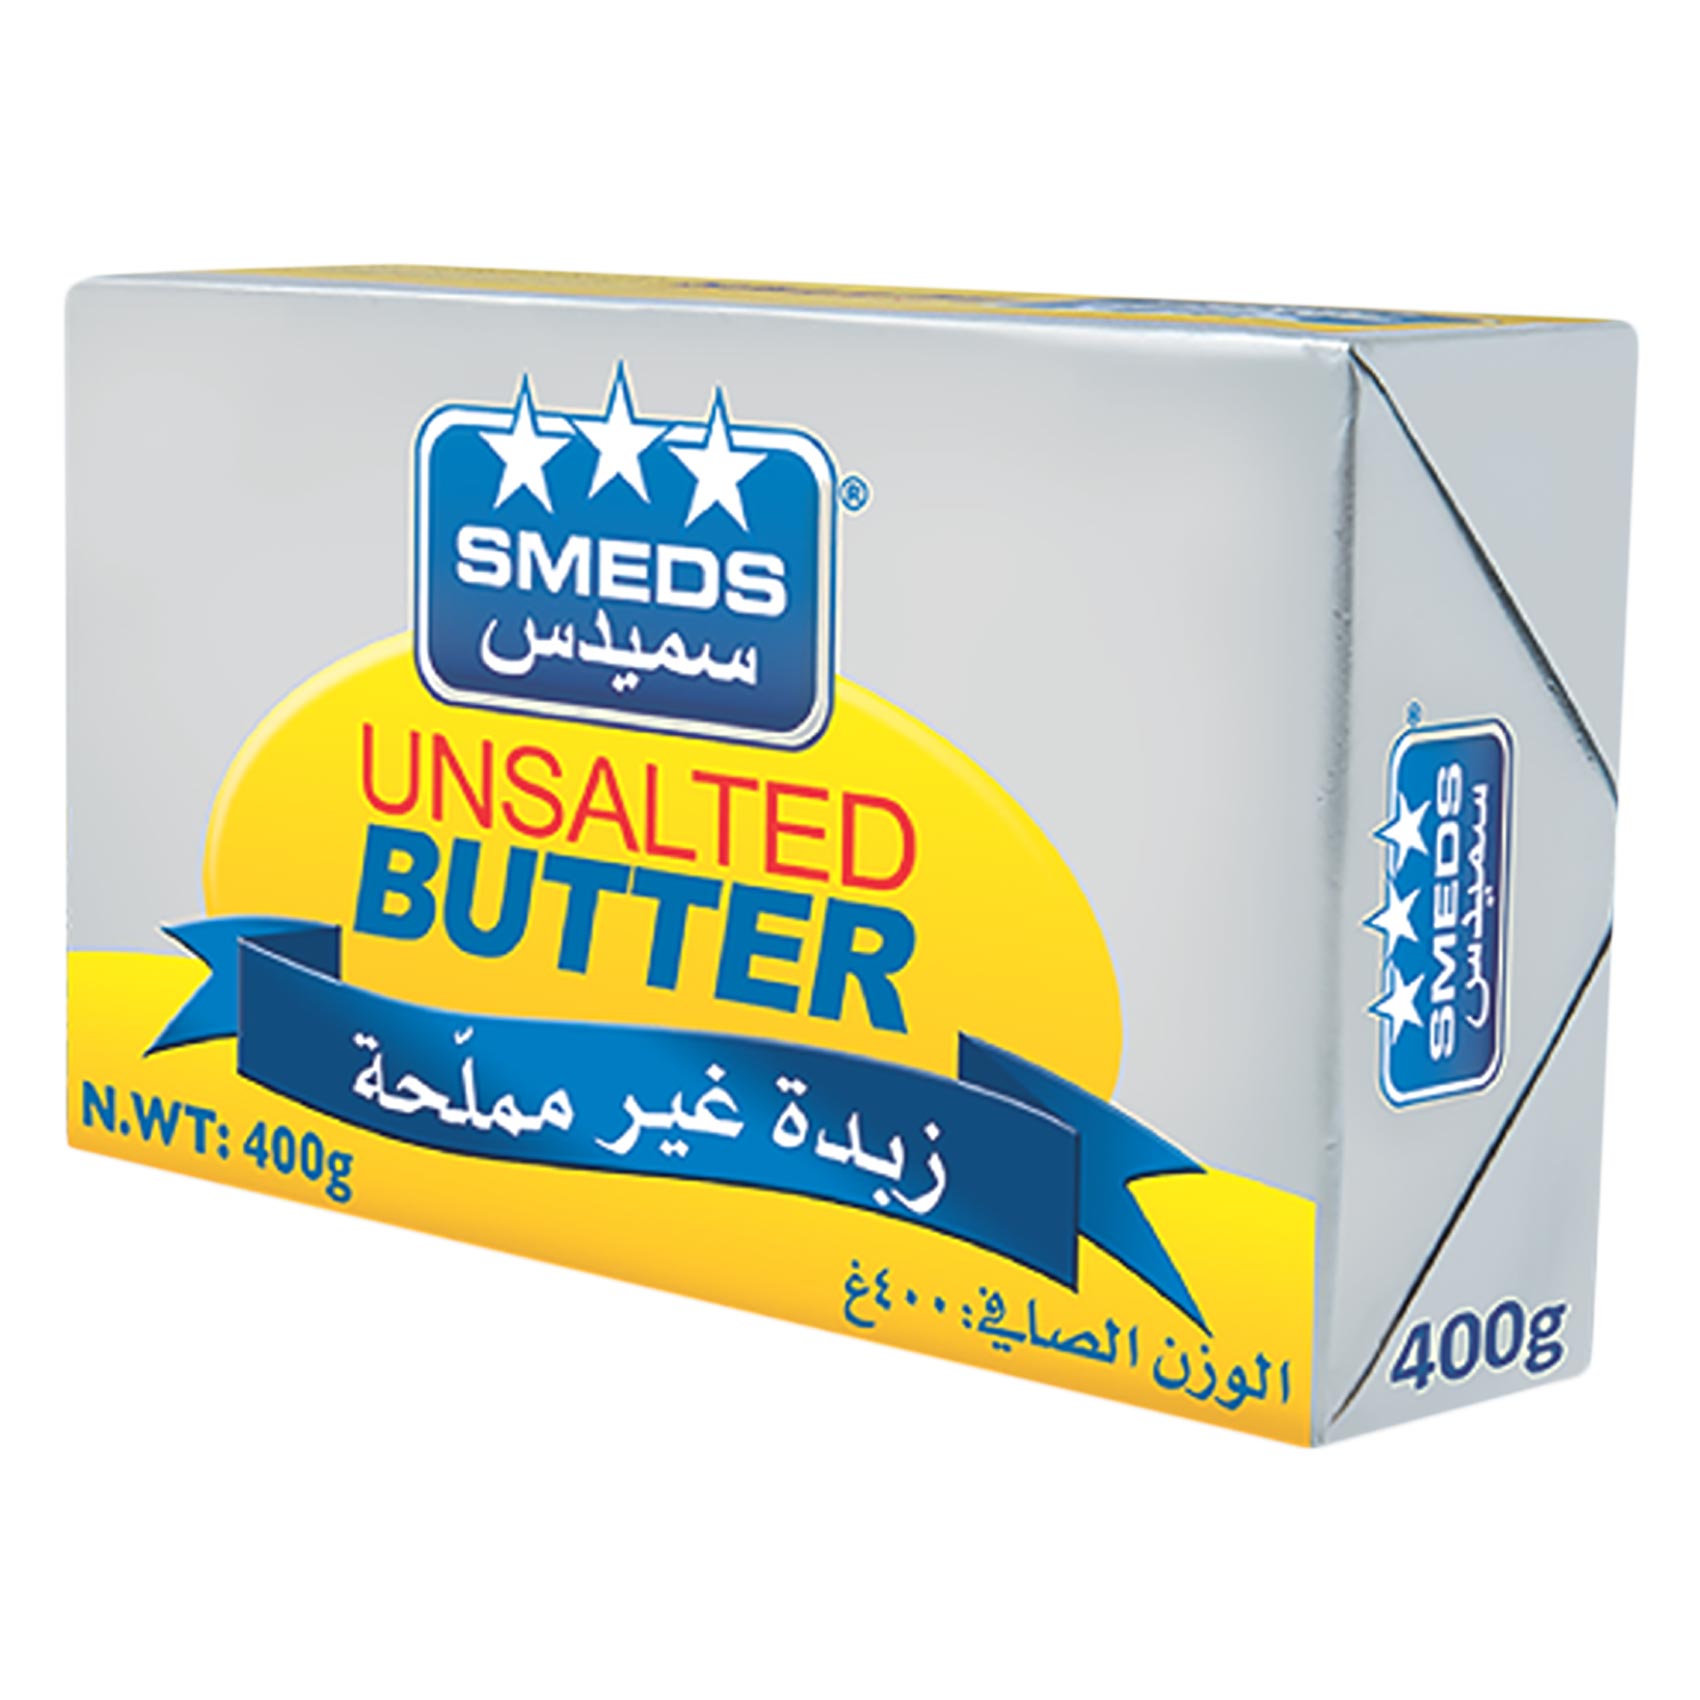 Smeds Unsalted Butter 400GR